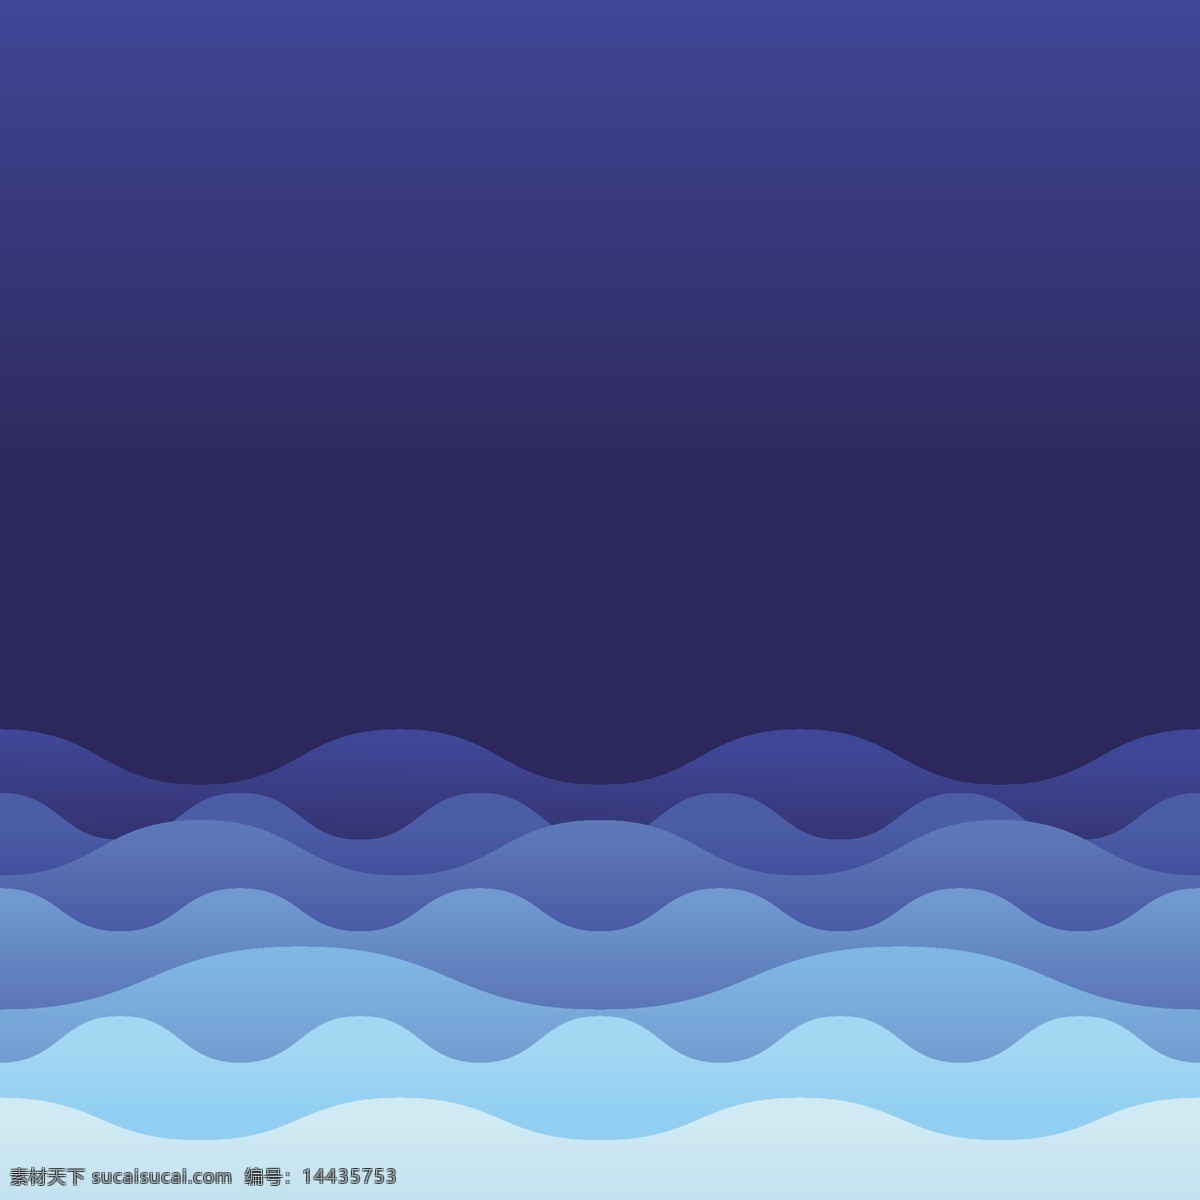 摘要背景设计 背景 抽象背景 抽象 蓝色背景 波浪 蓝色 形状 墙纸 颜色 多彩的背景 波浪背景 色彩 抽象的波浪 丰富的背景 抽象的形状 波浪形